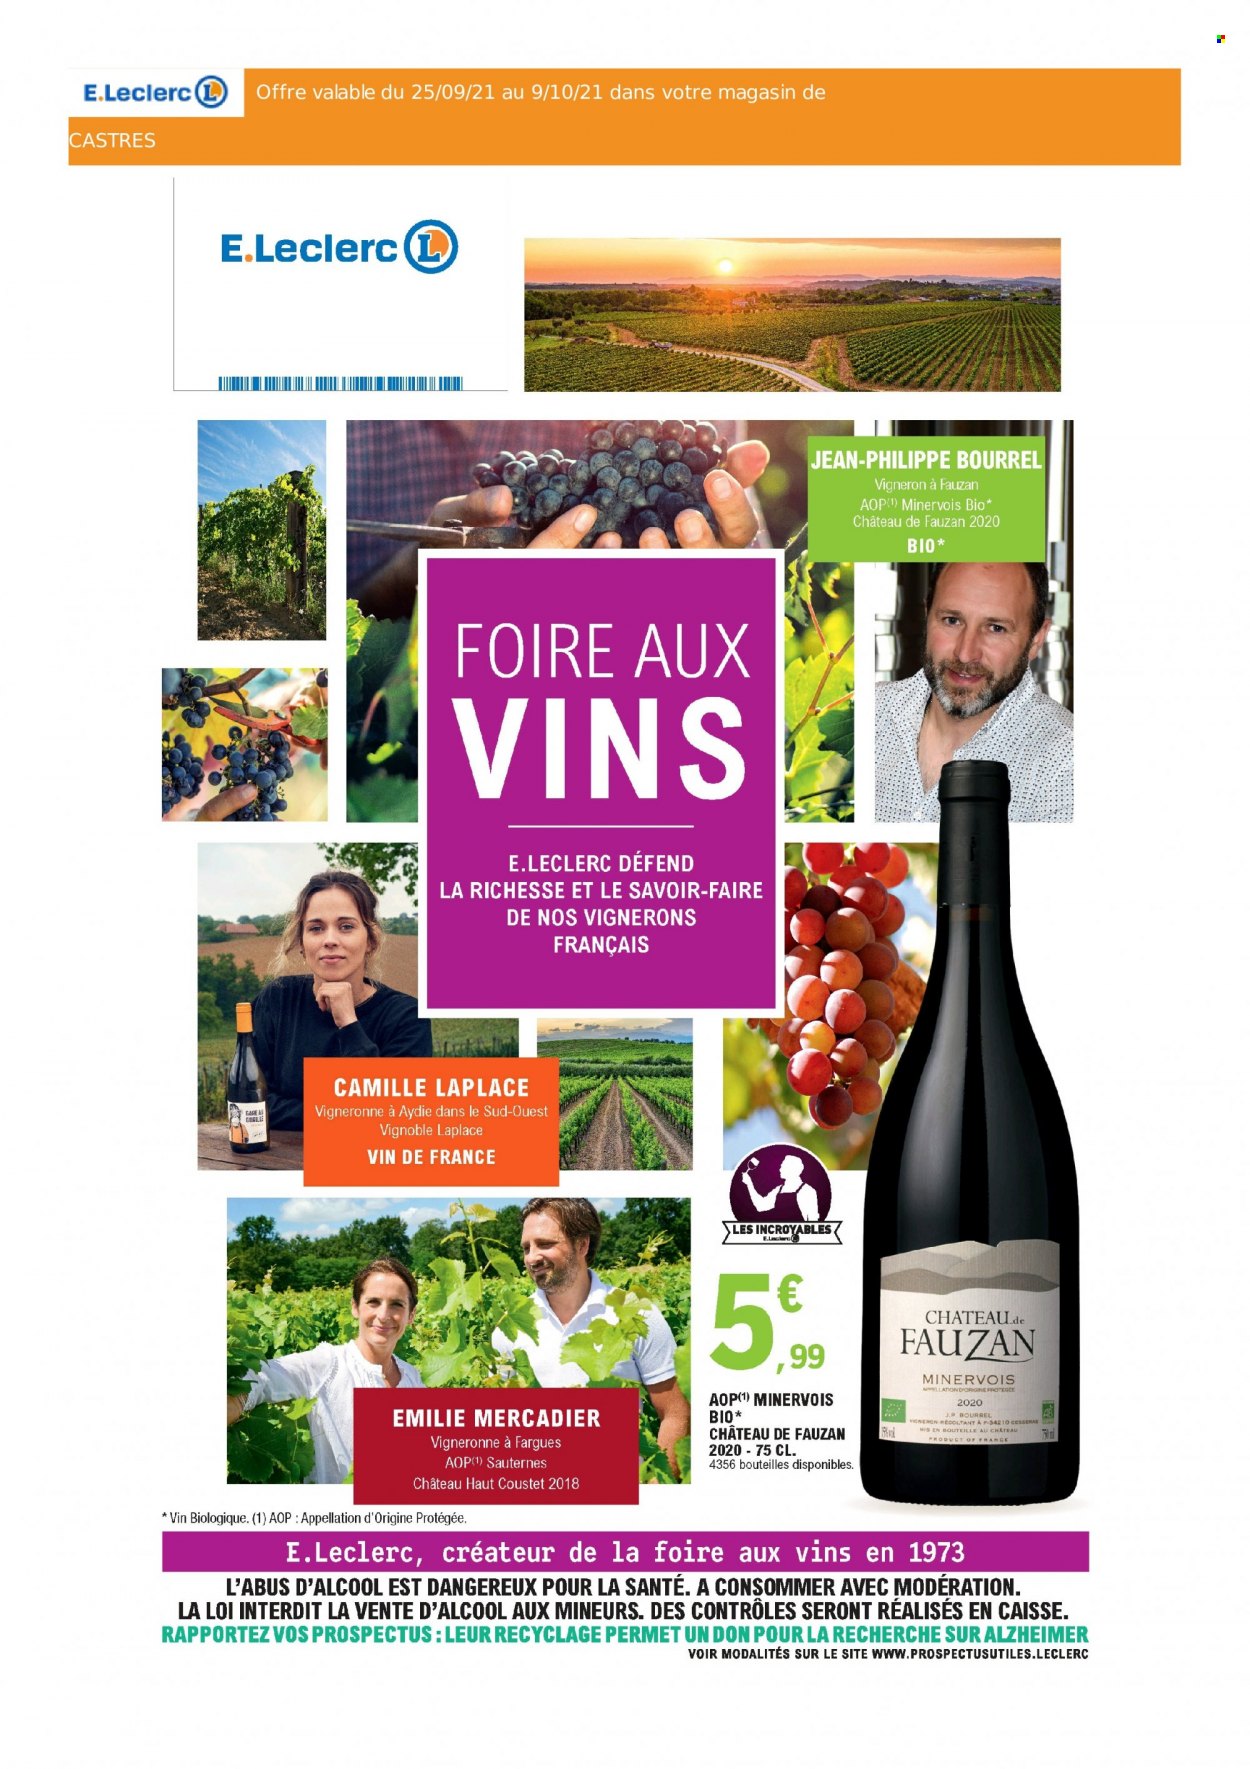 thumbnail - Catalogue E.Leclerc - Produits soldés - vin blanc, Sauternes, vin, jeans. Page 1.